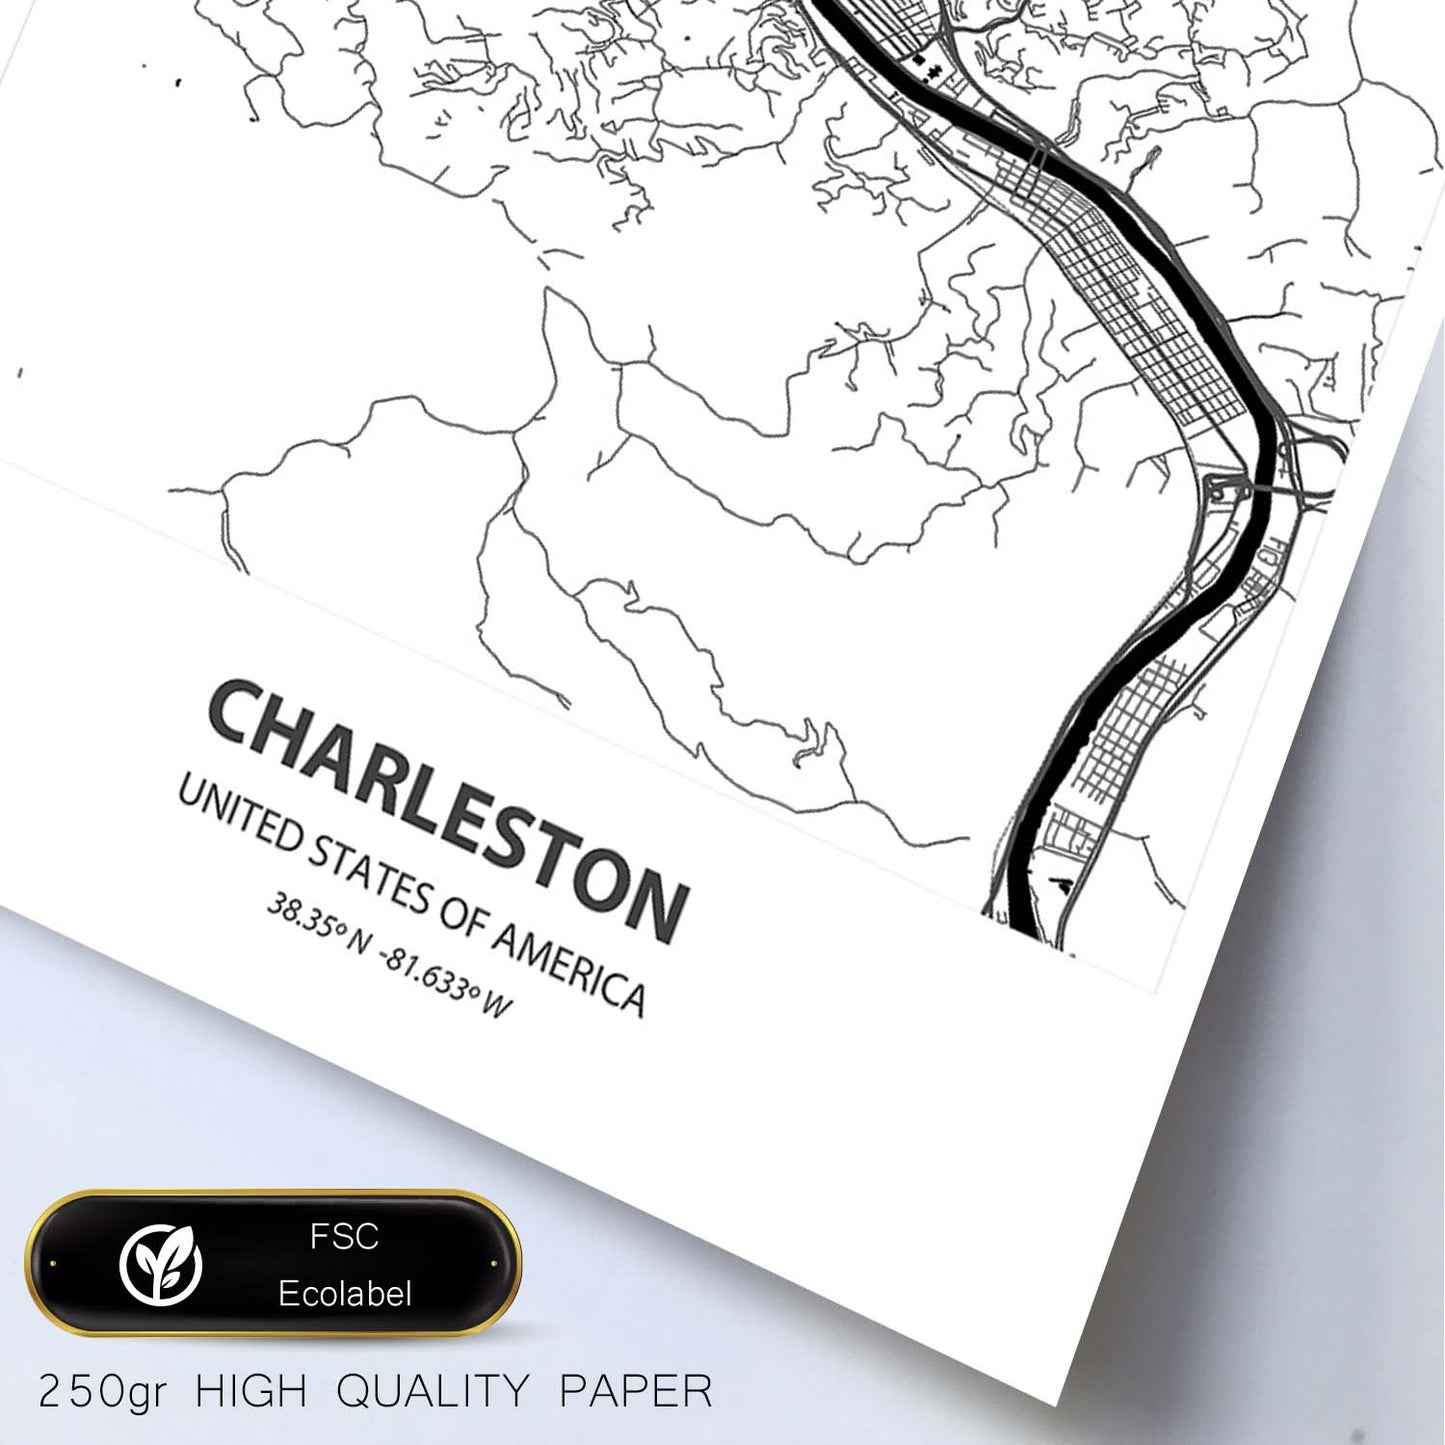 Poster con mapa de Charleston - USA. Láminas de ciudades de Estados Unidos con mares y ríos en color negro.-Artwork-Nacnic-Nacnic Estudio SL